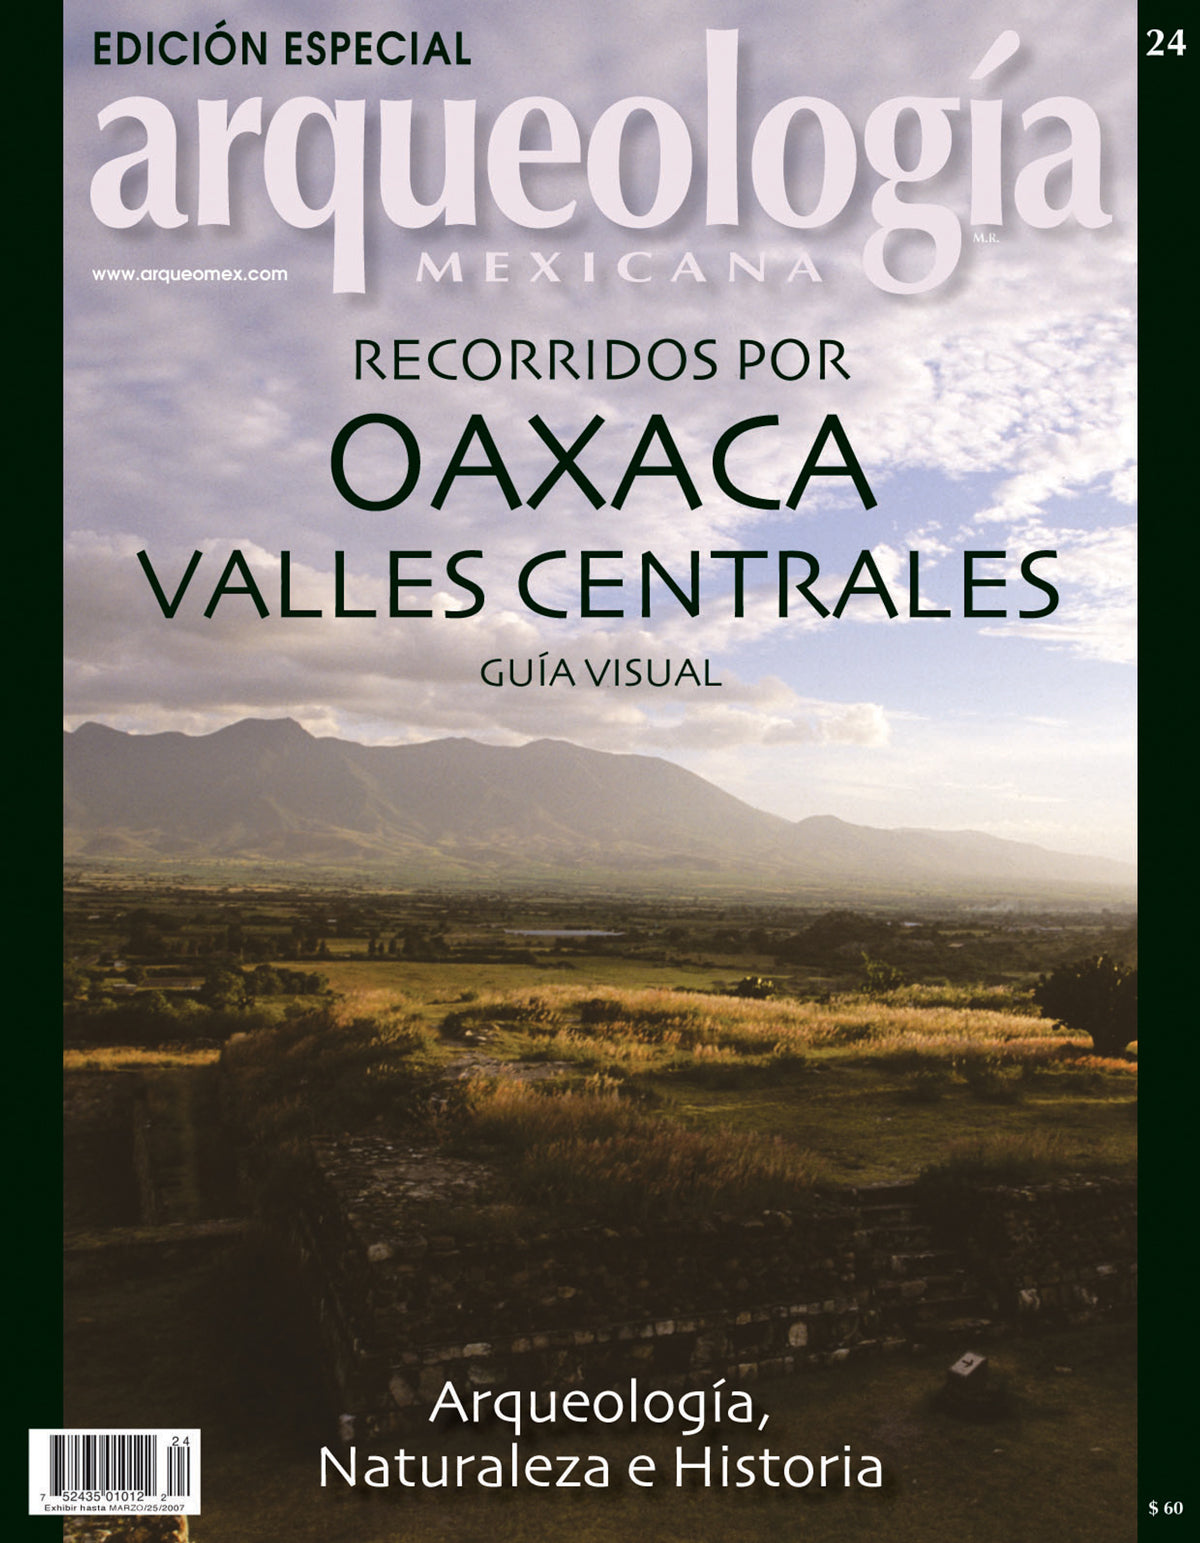 Recorridos por Oaxaca valles centrales. Guía visual